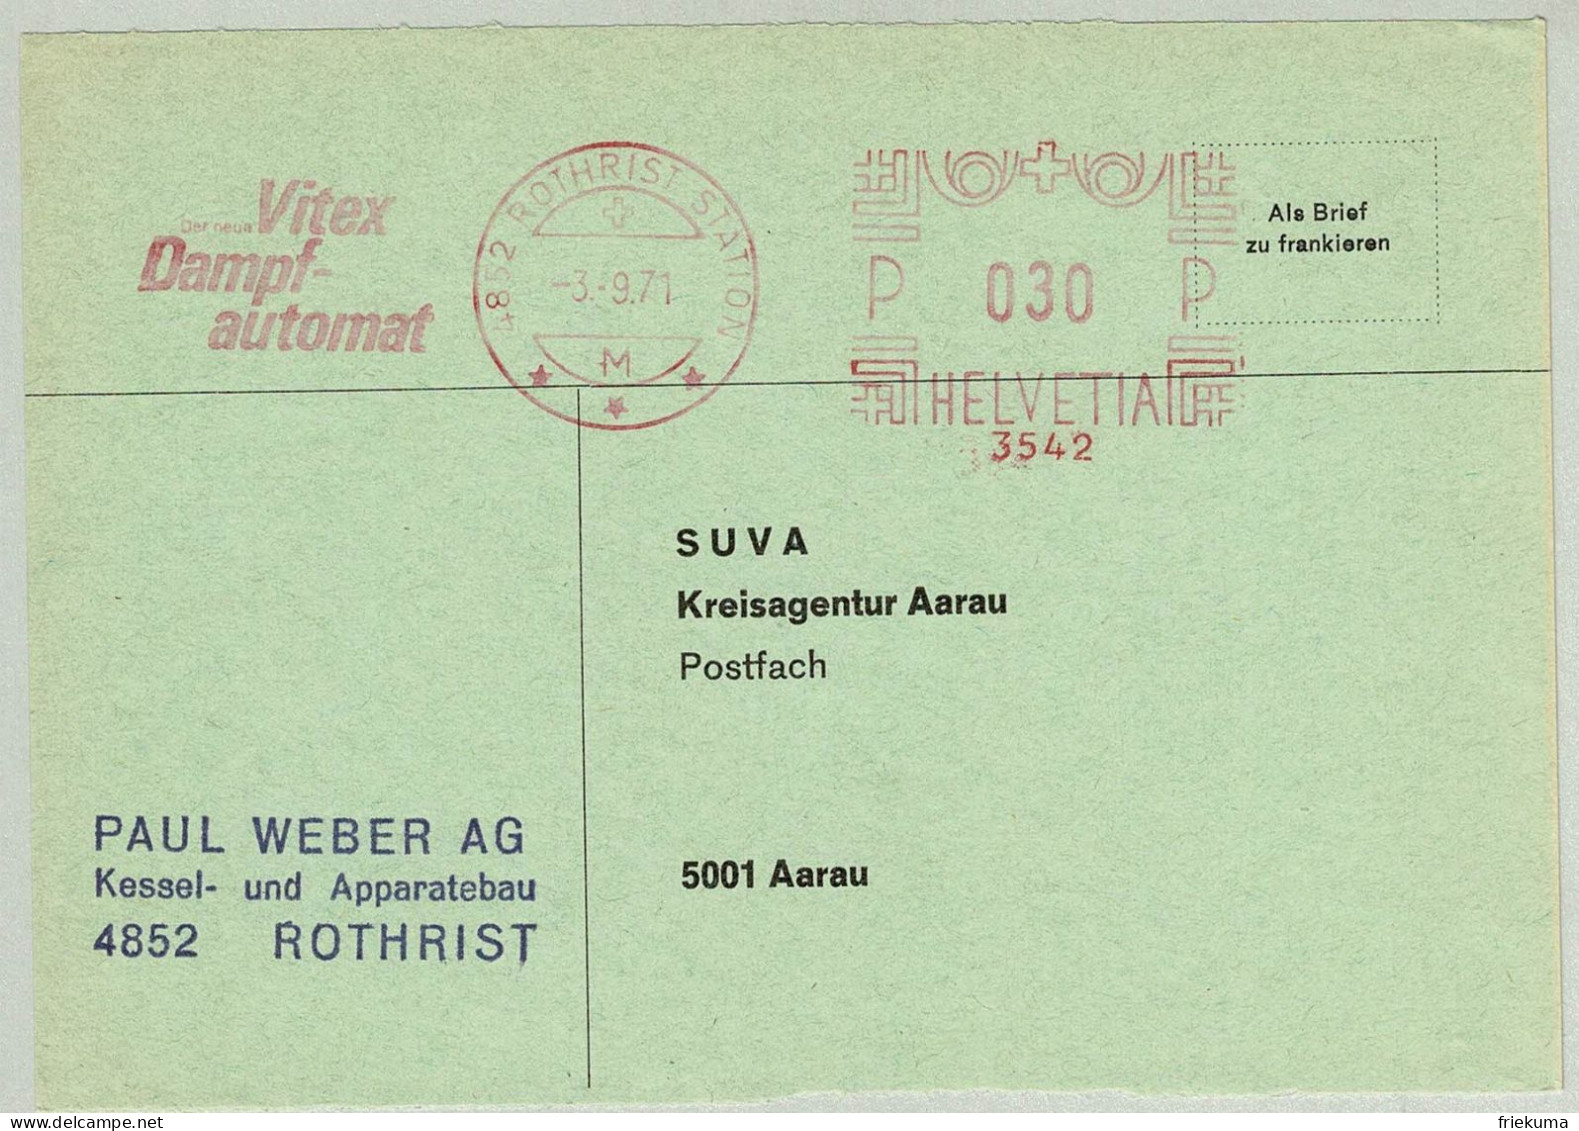 Schweiz / Helvetia 1971, Briefausschnitt Freistempel / EMA / Meterstamp Weber AG Rothrist - Aarau, Dampfautomat - Water